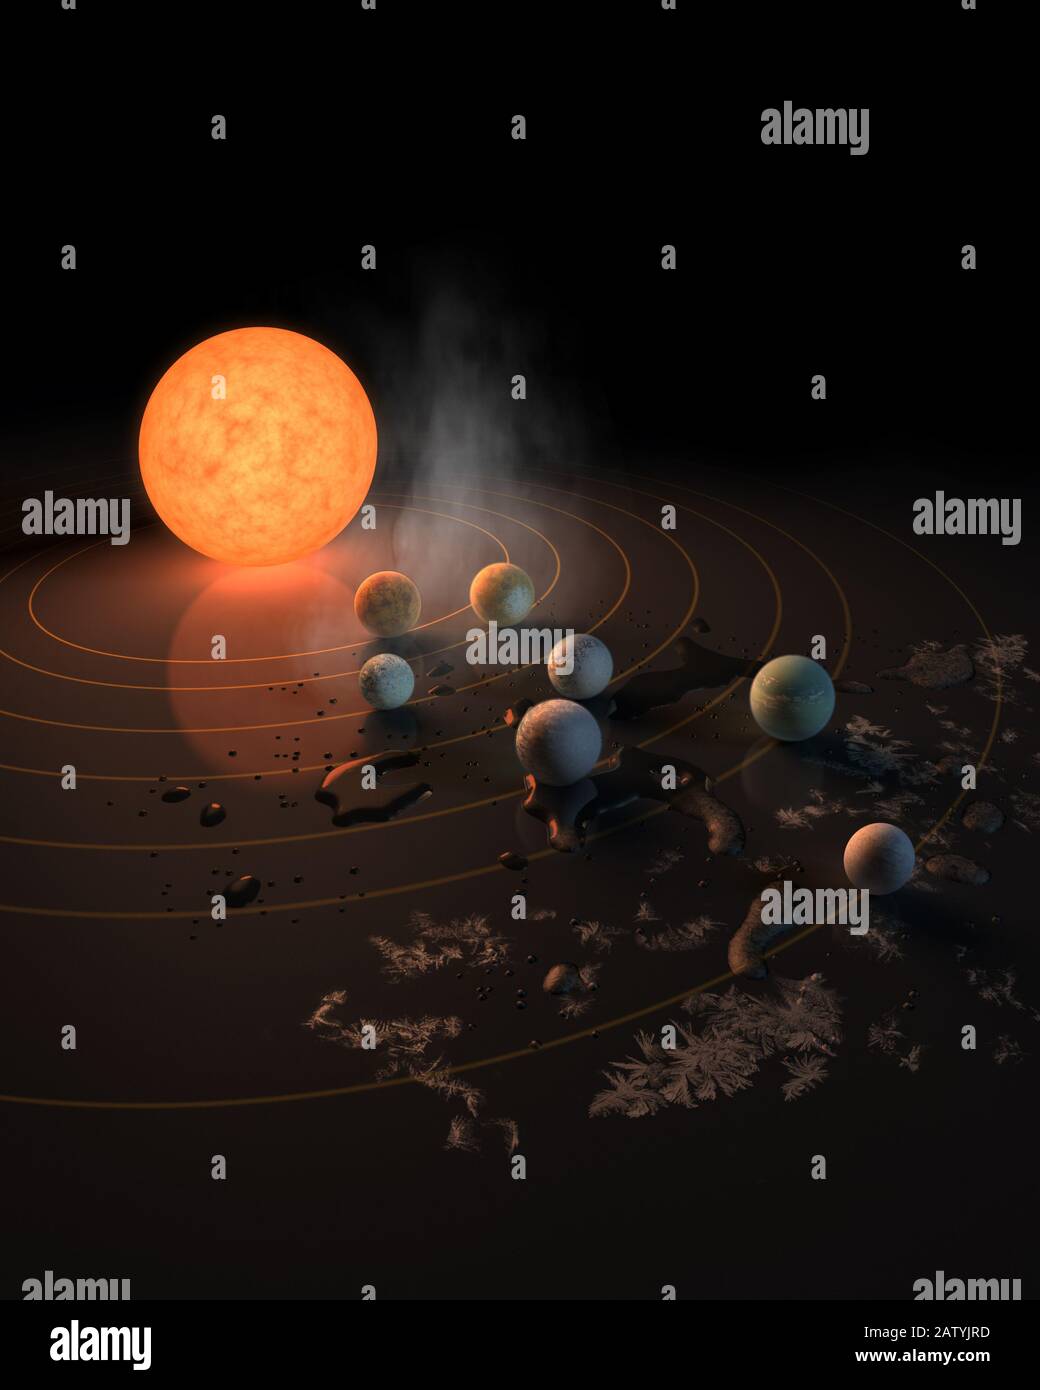 À seulement 40 années-lumière — un jet de pierre sur l'échelle de notre galaxie — plusieurs planètes de la taille de la Terre orbitent autour de L'étoile naine rouge TRAPPIST-1. Quatre de la p Banque D'Images